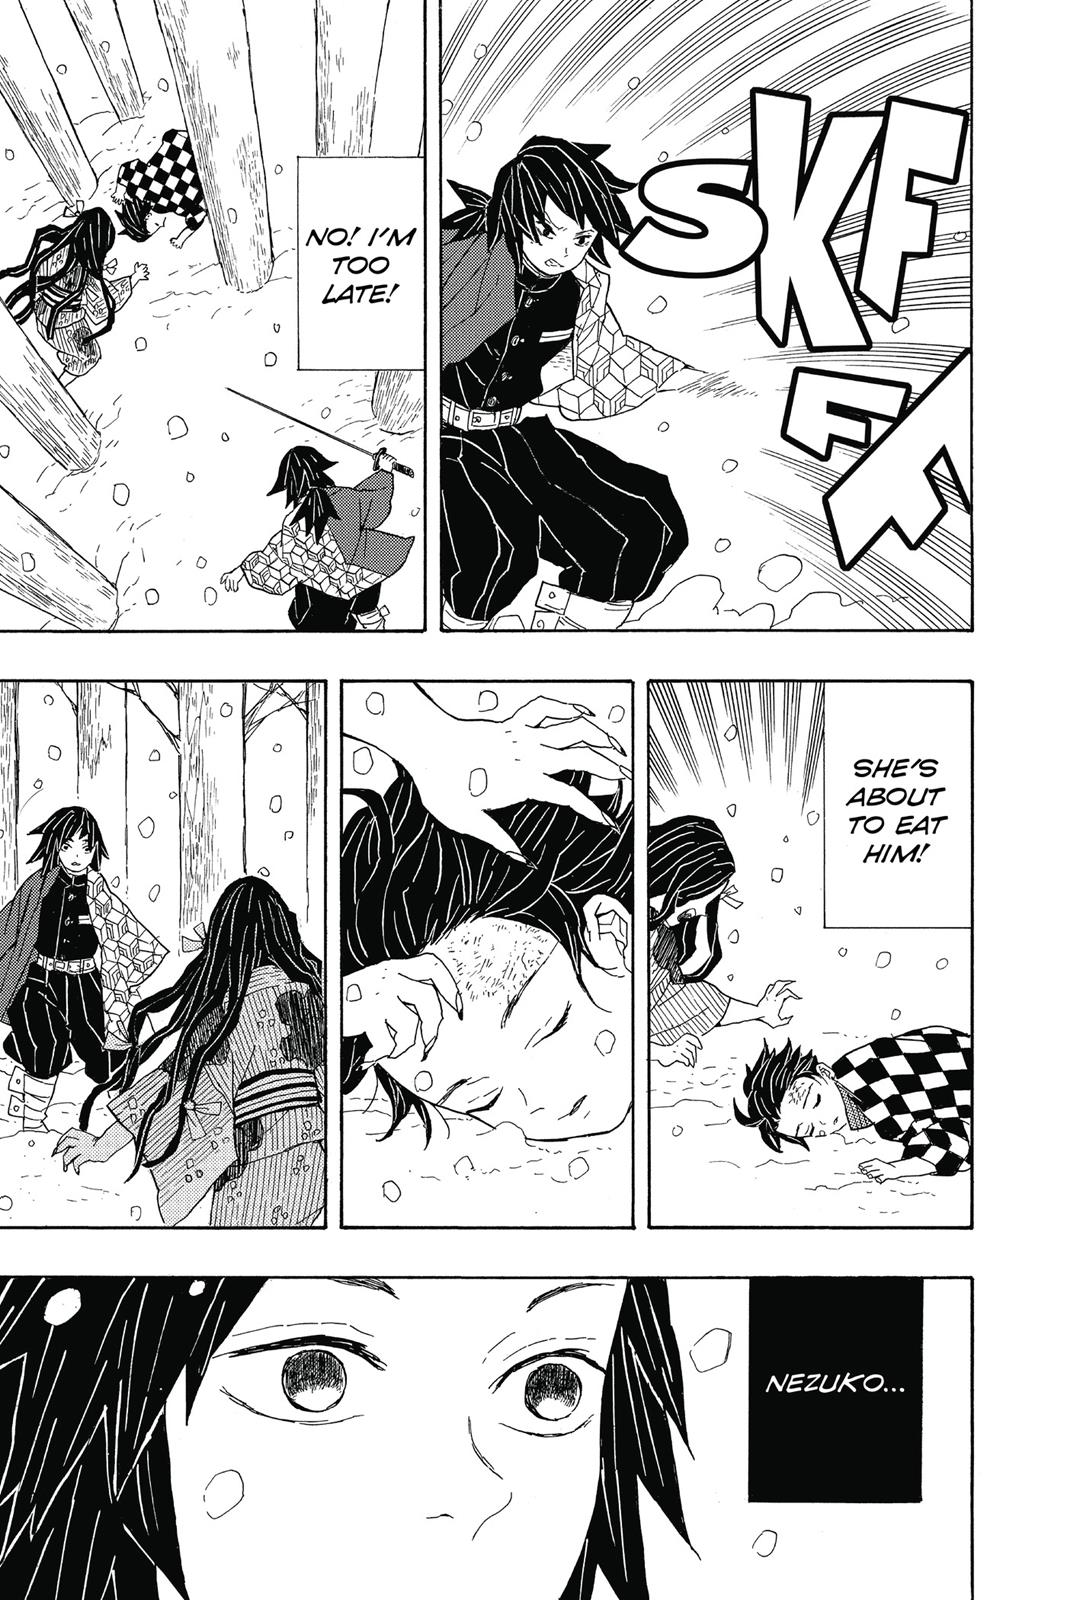 Demon Slayer Manga Manga Chapter - 1 - image 31